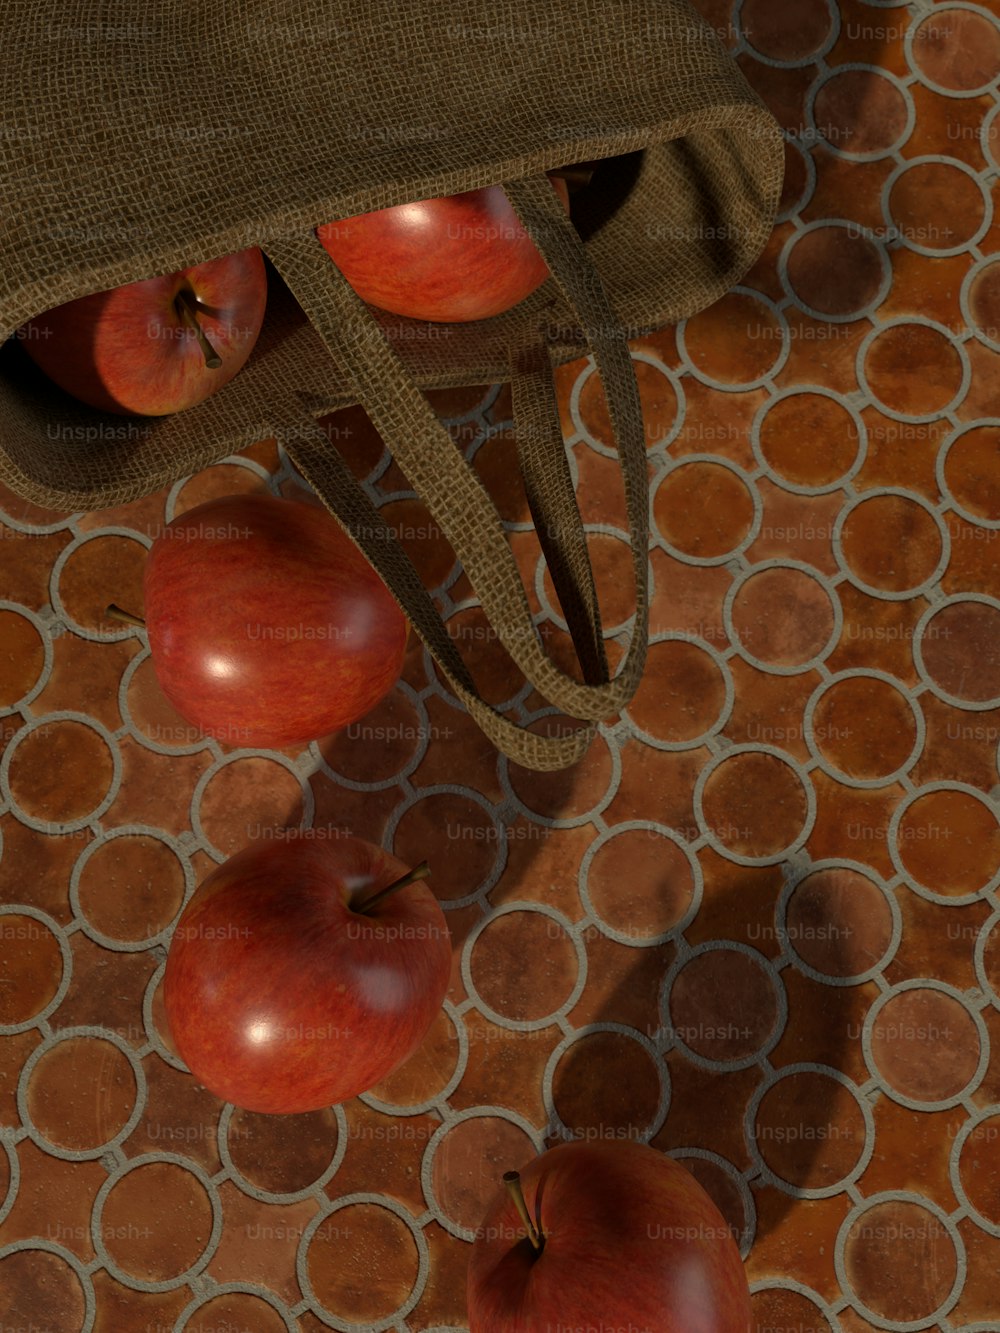 un groupe de pommes posé sur un sol carrelé